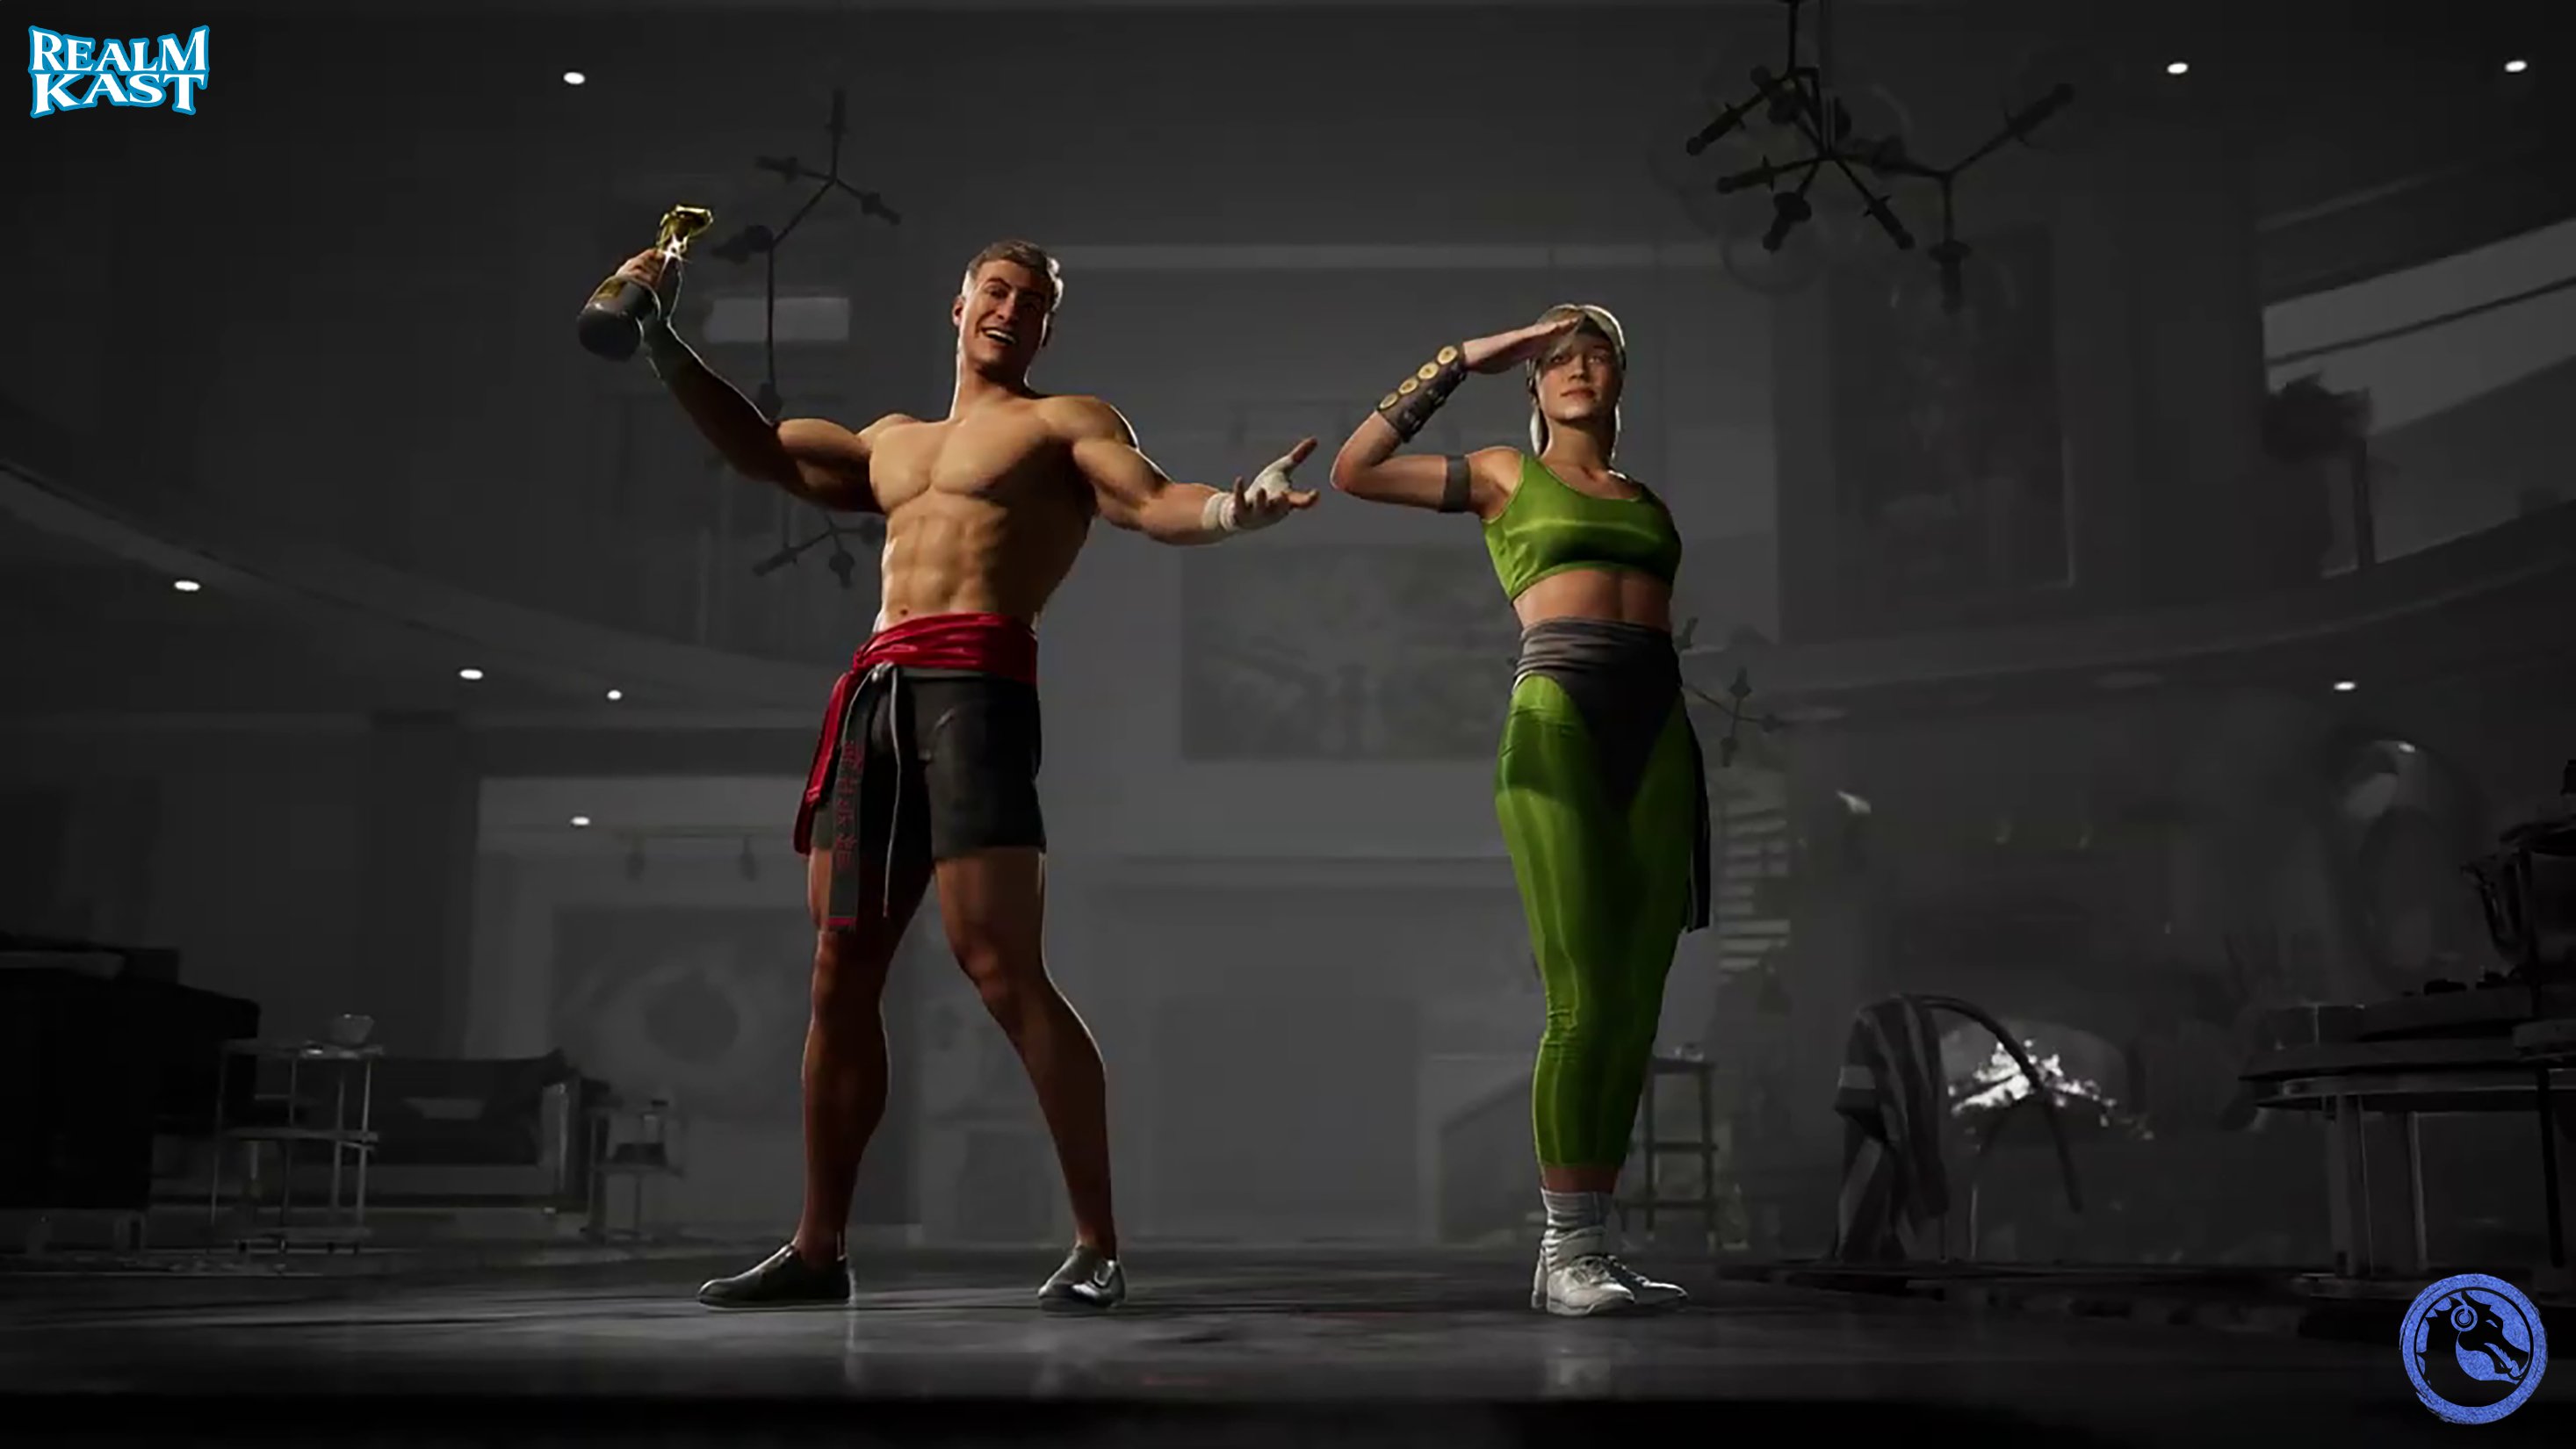 Mortal Kombat 1 launch trailer, Showing Reiko and Shang Tsung